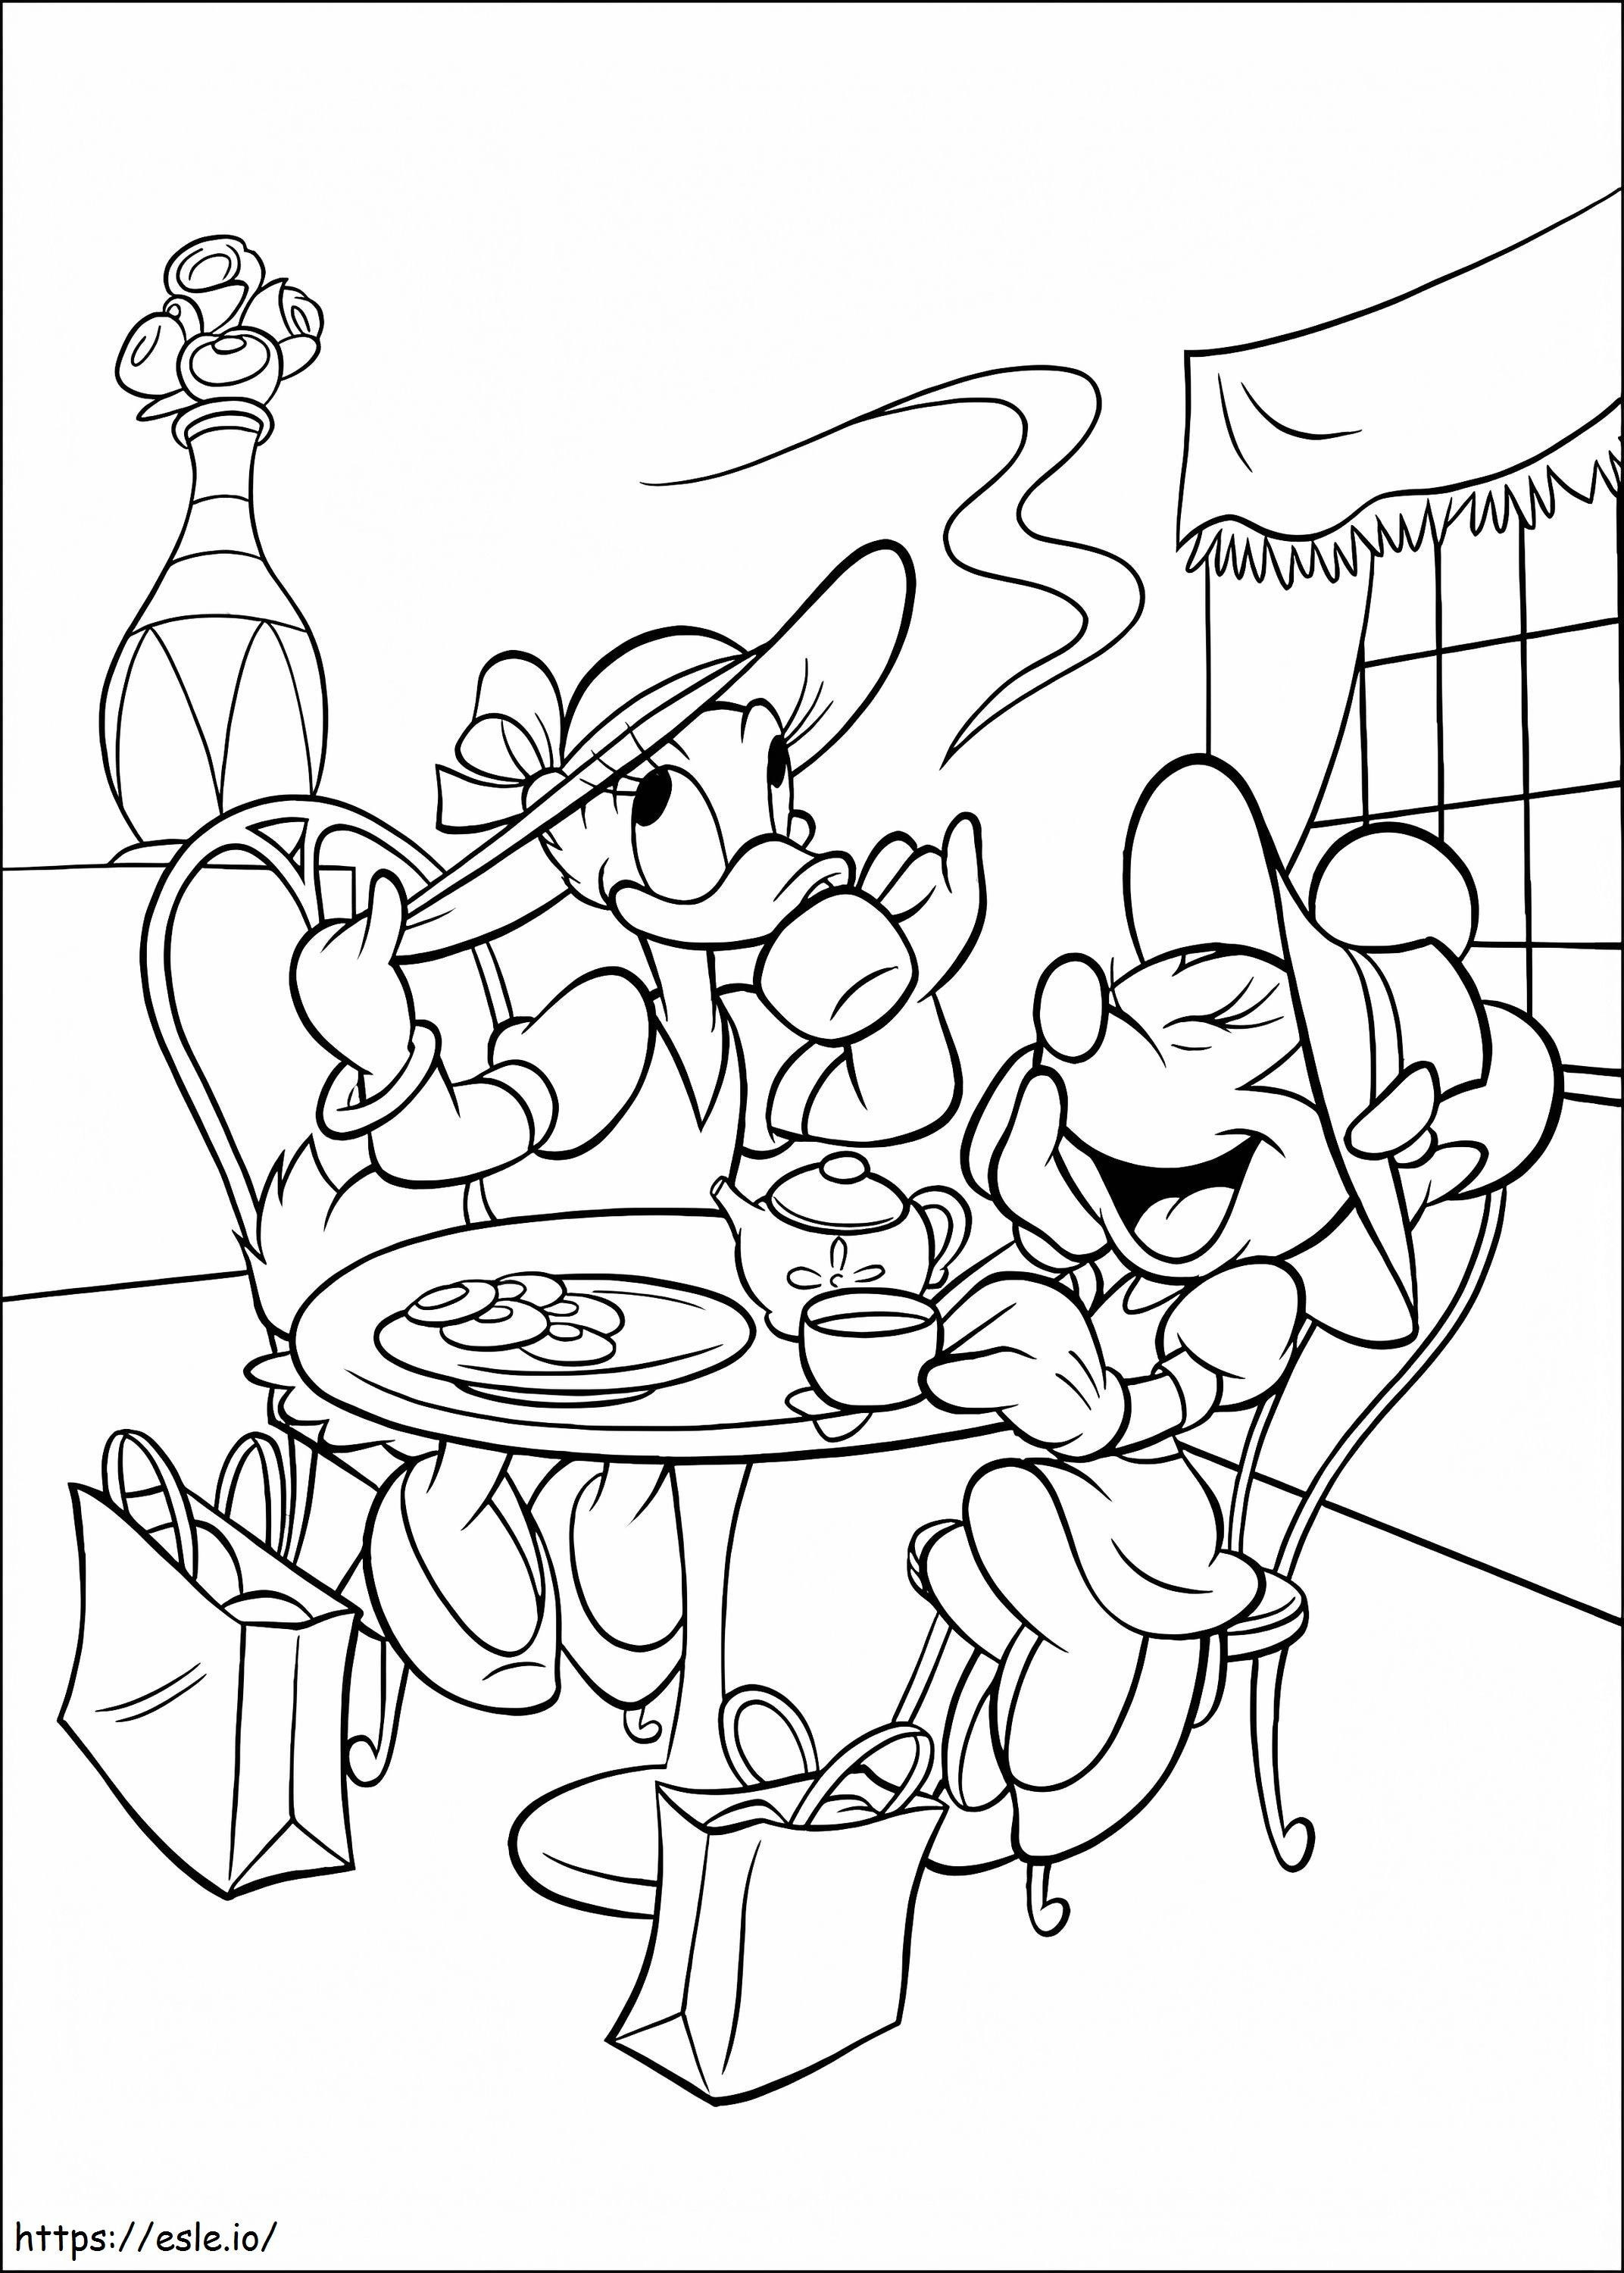 Daisy Duck Y Minnie Mouse En Fiesta coloring page